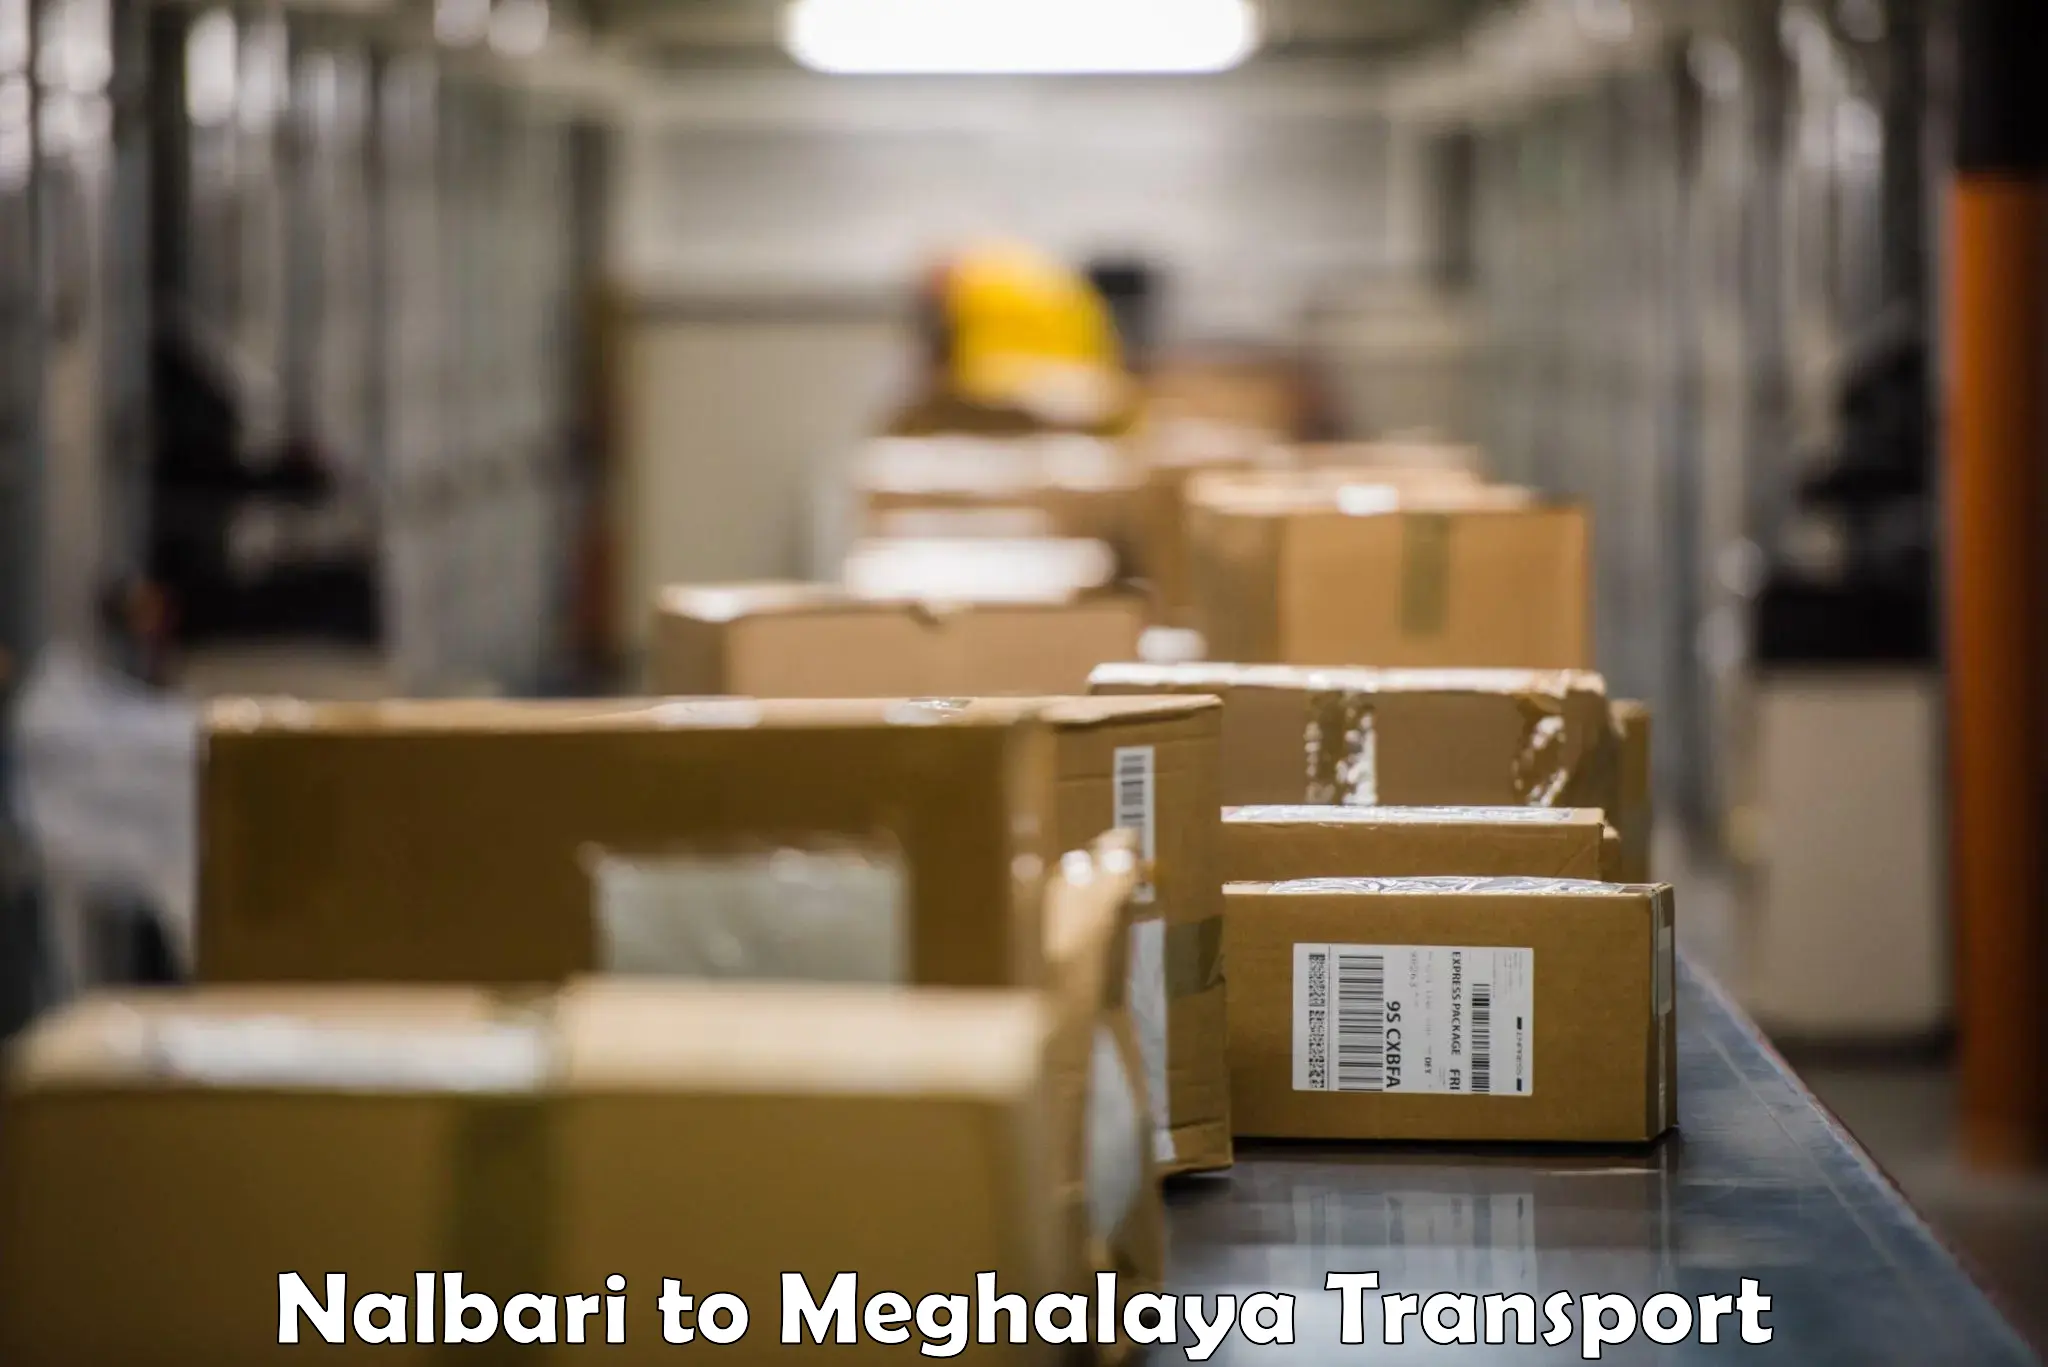 Transport in sharing Nalbari to Nongpoh